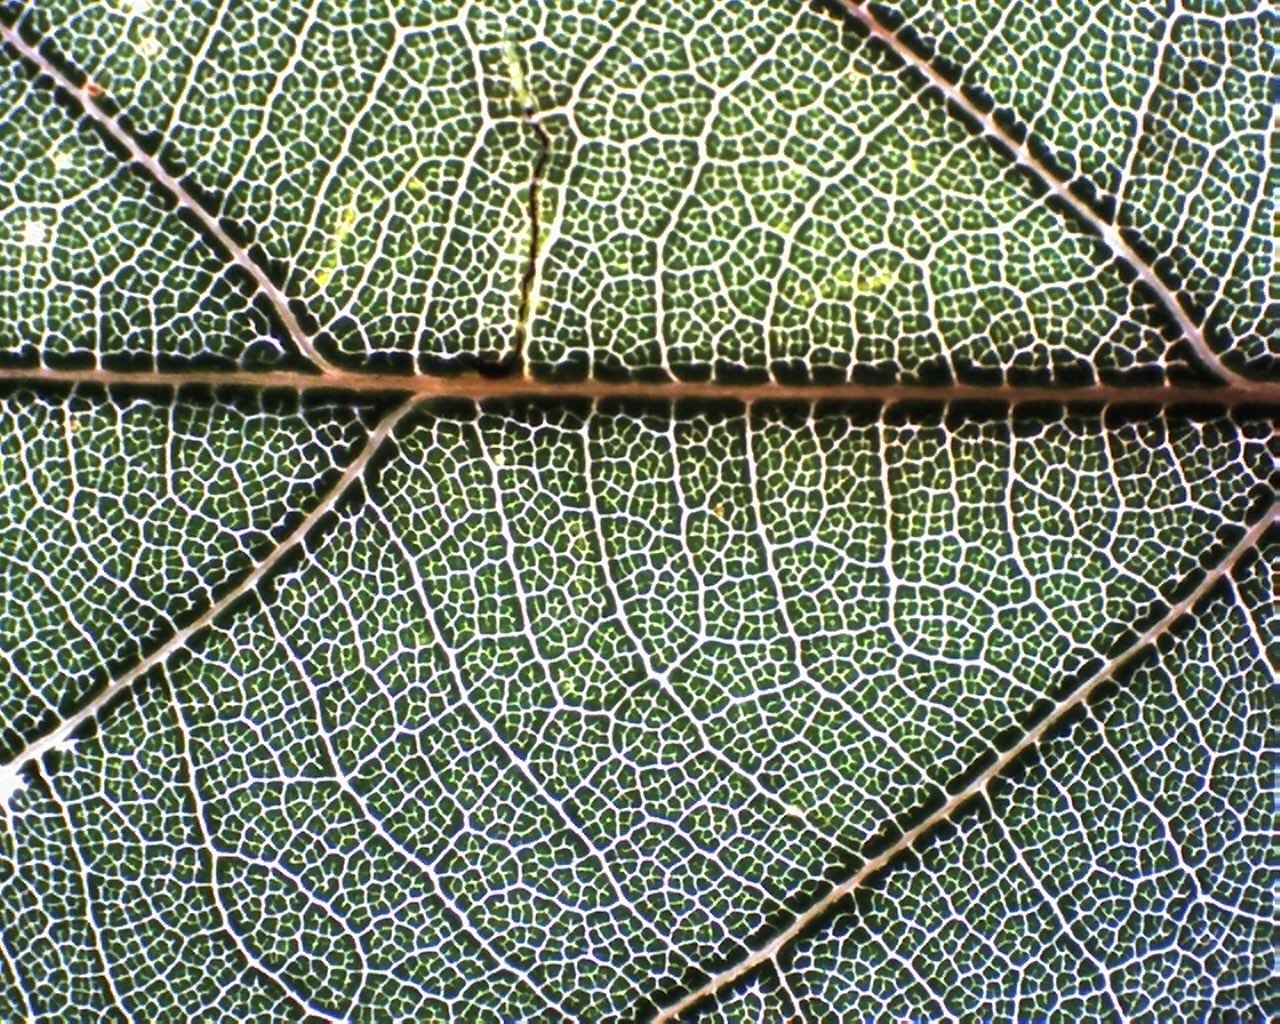 Chinkapin Oak leaf.jpg